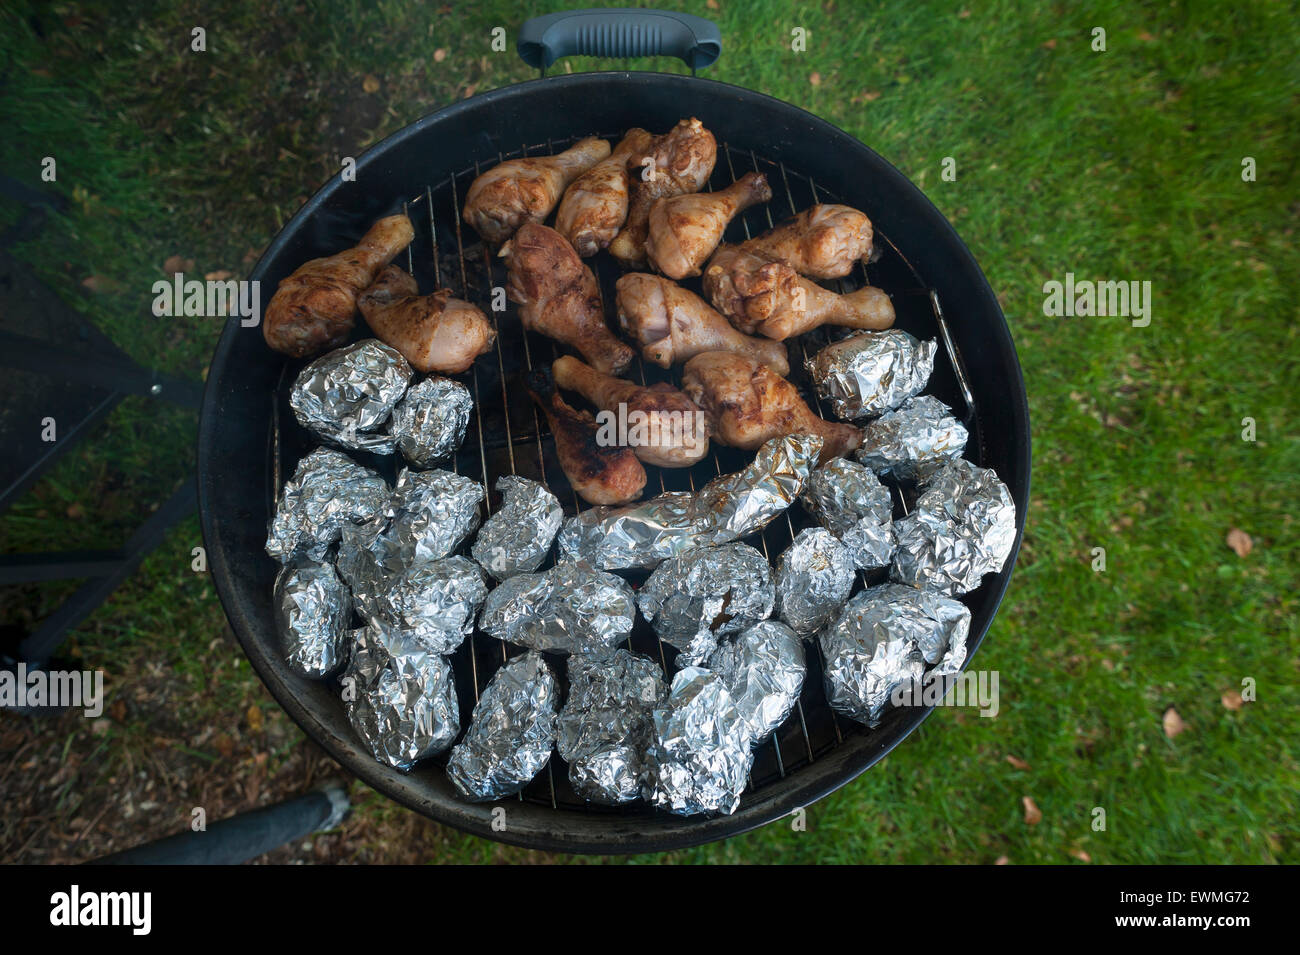 Des pommes de terre et les cuisses de poulet sur le gril, Allemagne Banque D'Images